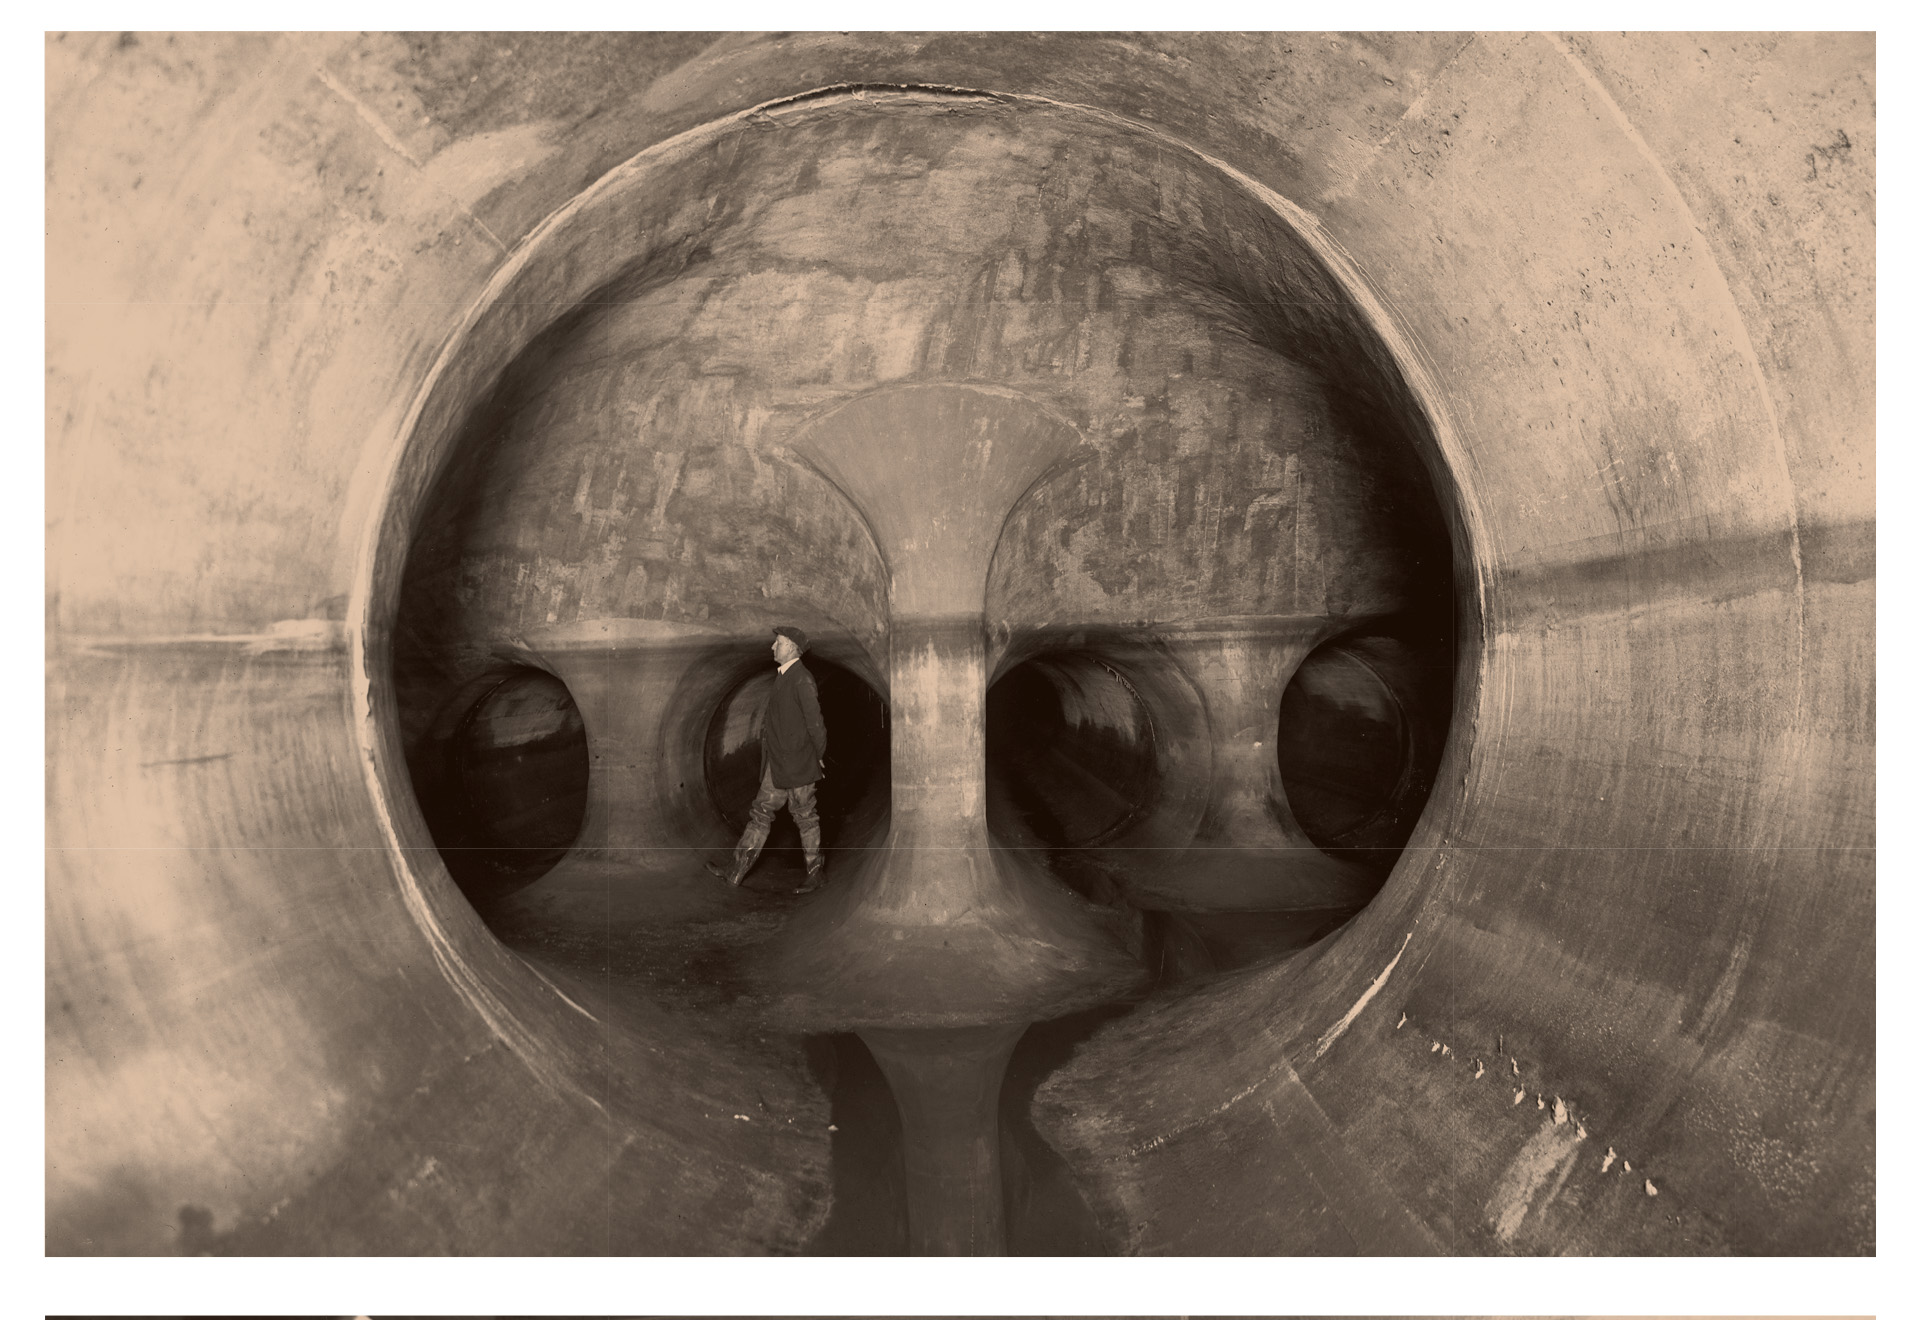 Man stands inside an interceptor sewers